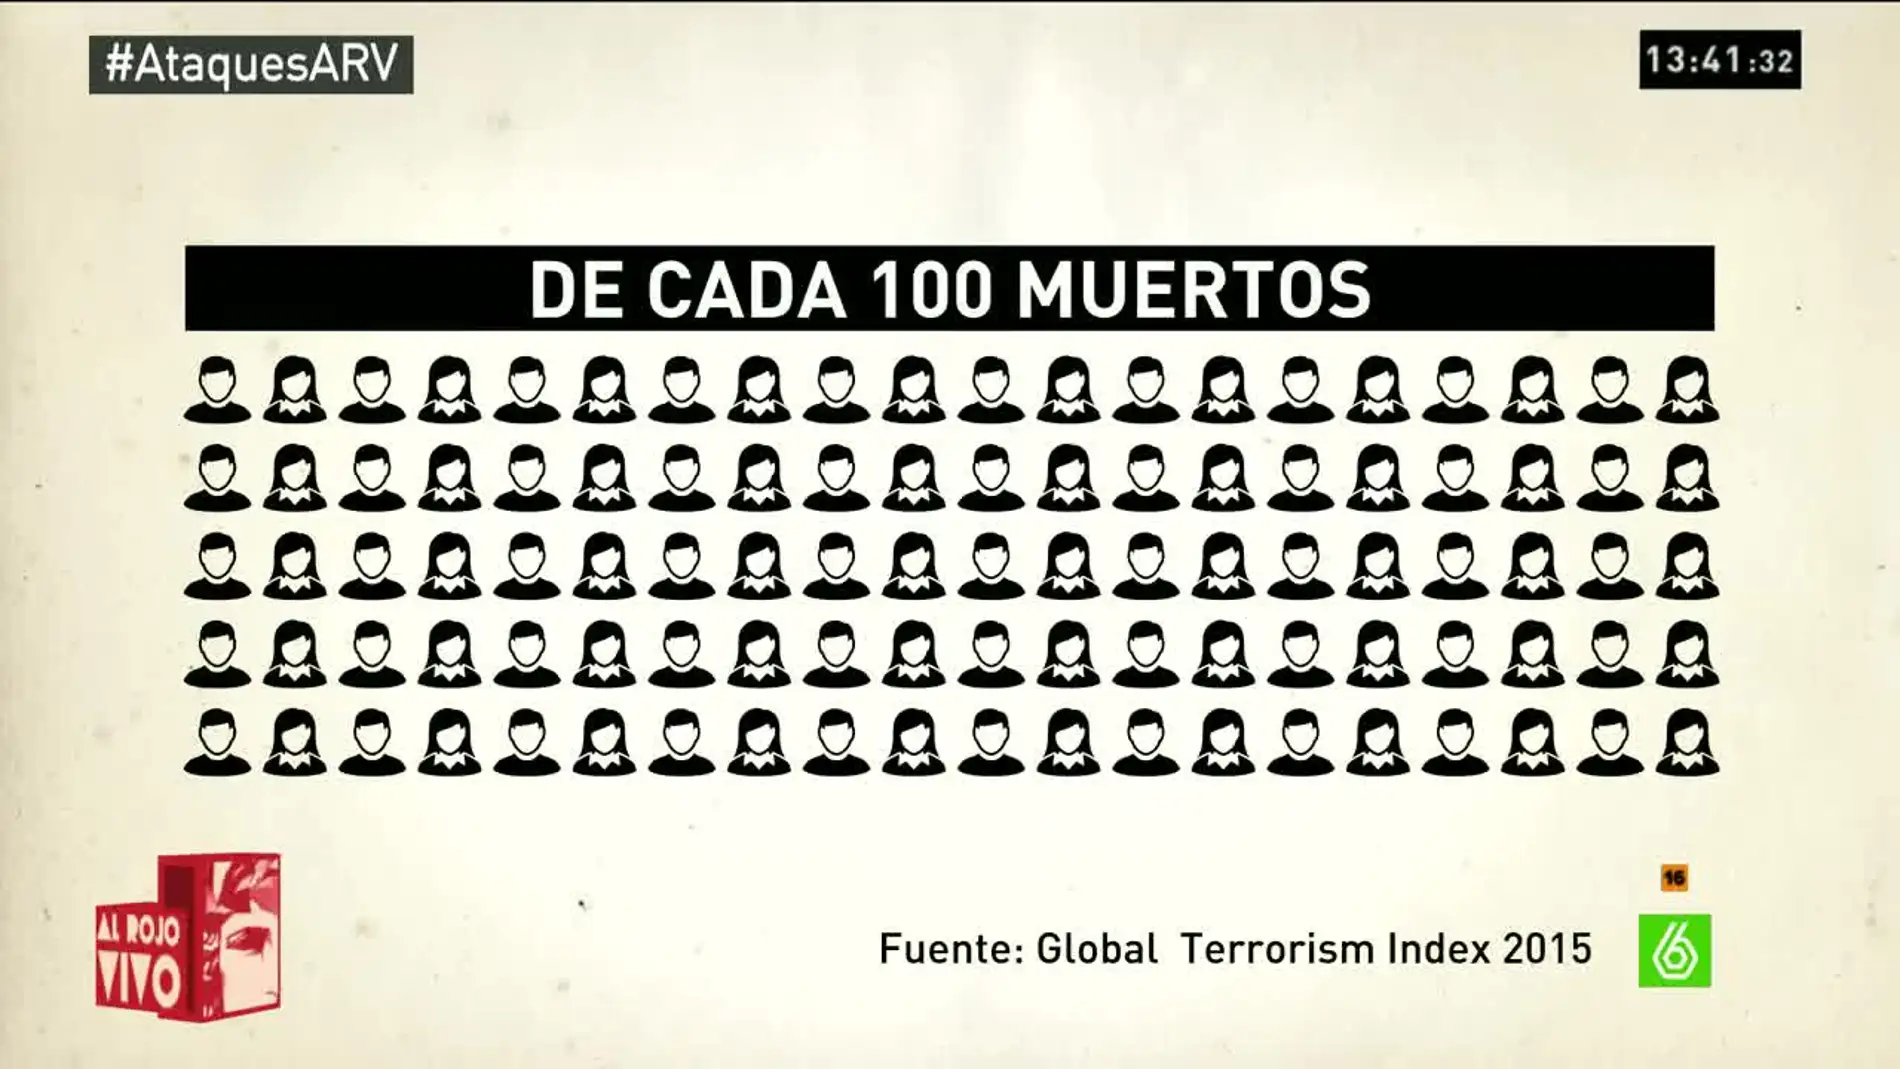 Gráfica sobre el número de muertos por yihadismo